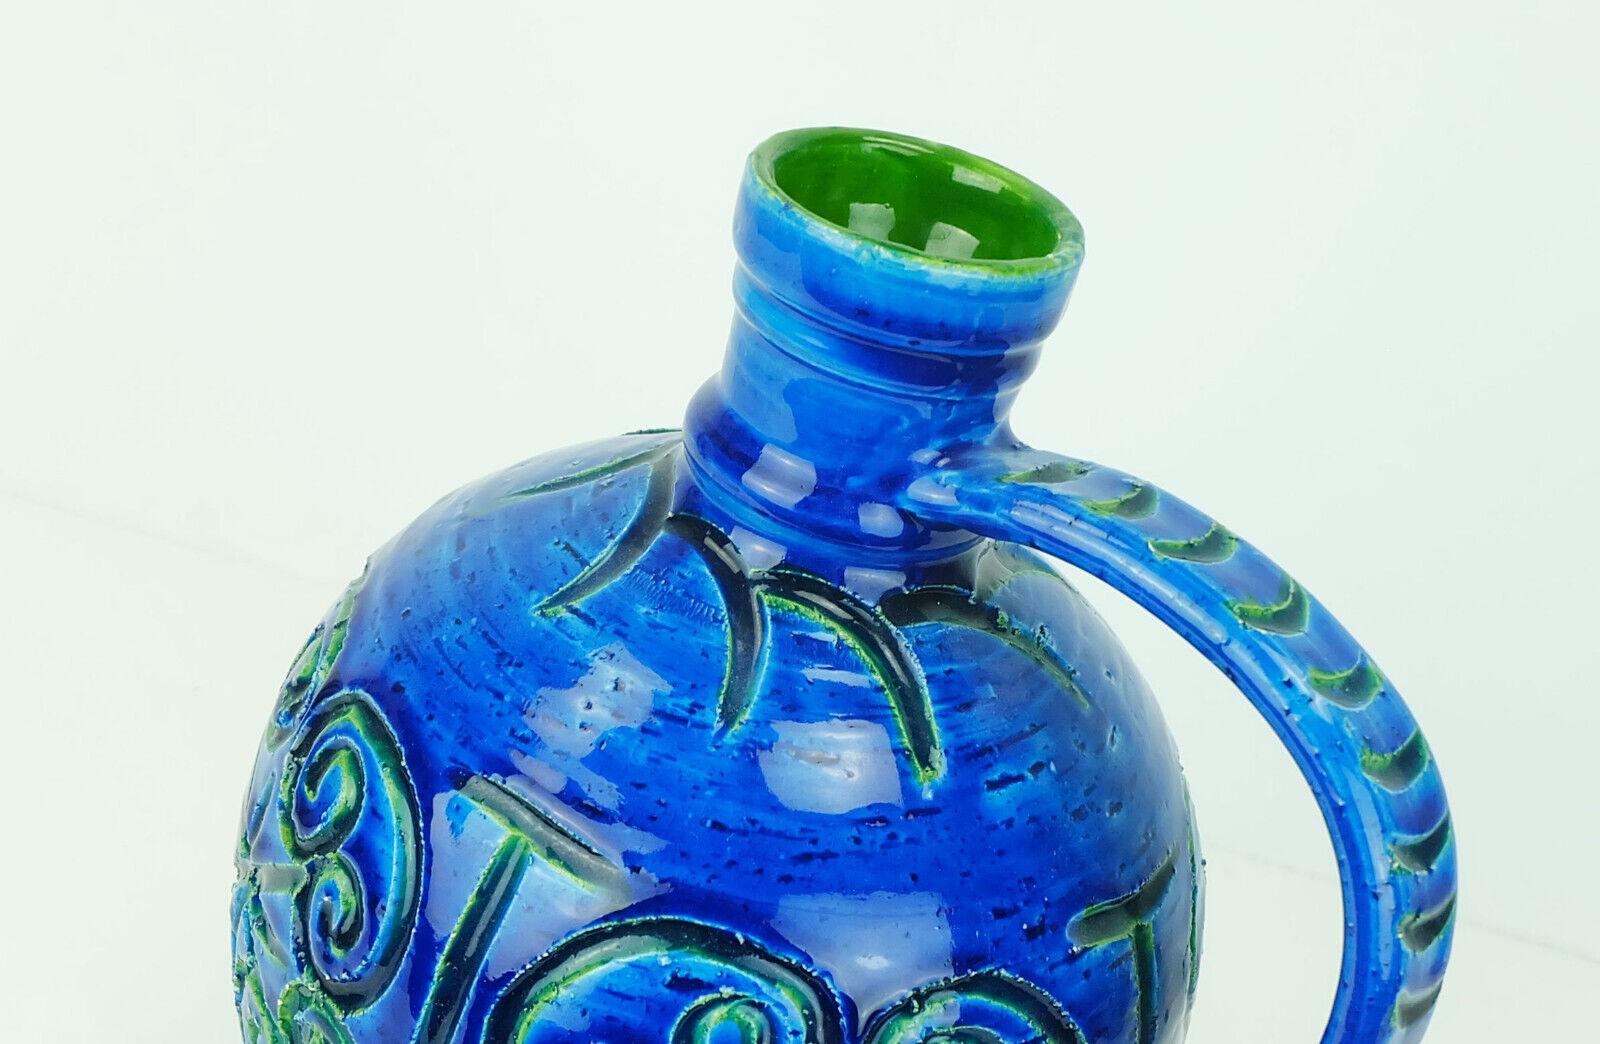 Italienische Vase aus der Mitte des Jahrhunderts mit reliefierter Oberfläche in verschiedenen Blau-, Türkis- und Grüntönen. Auf der Unterseite mit der Modellnummer gekennzeichnet. 

Sehr guter Zustand, keine Schäden.

Abmessungen in cm:
Höhe 27,5